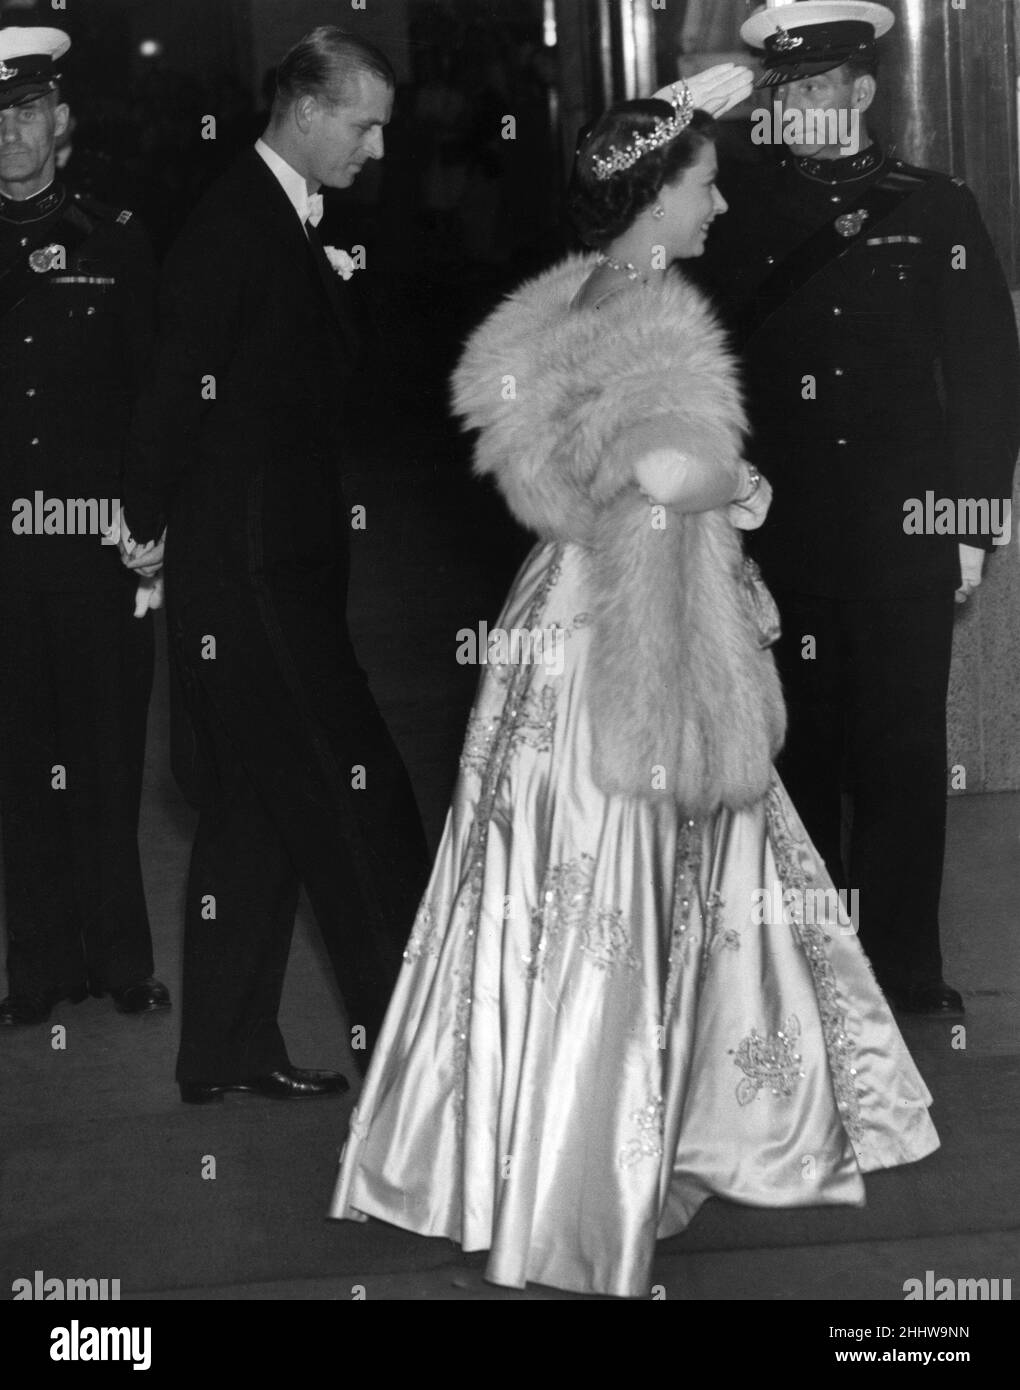 La princesa Elizabeth con un elegante vestido largo y piel stoll asiste al  estreno de la película 'La dama con una lámpara' acompañada por su marido  el príncipe Felipe, el duque de